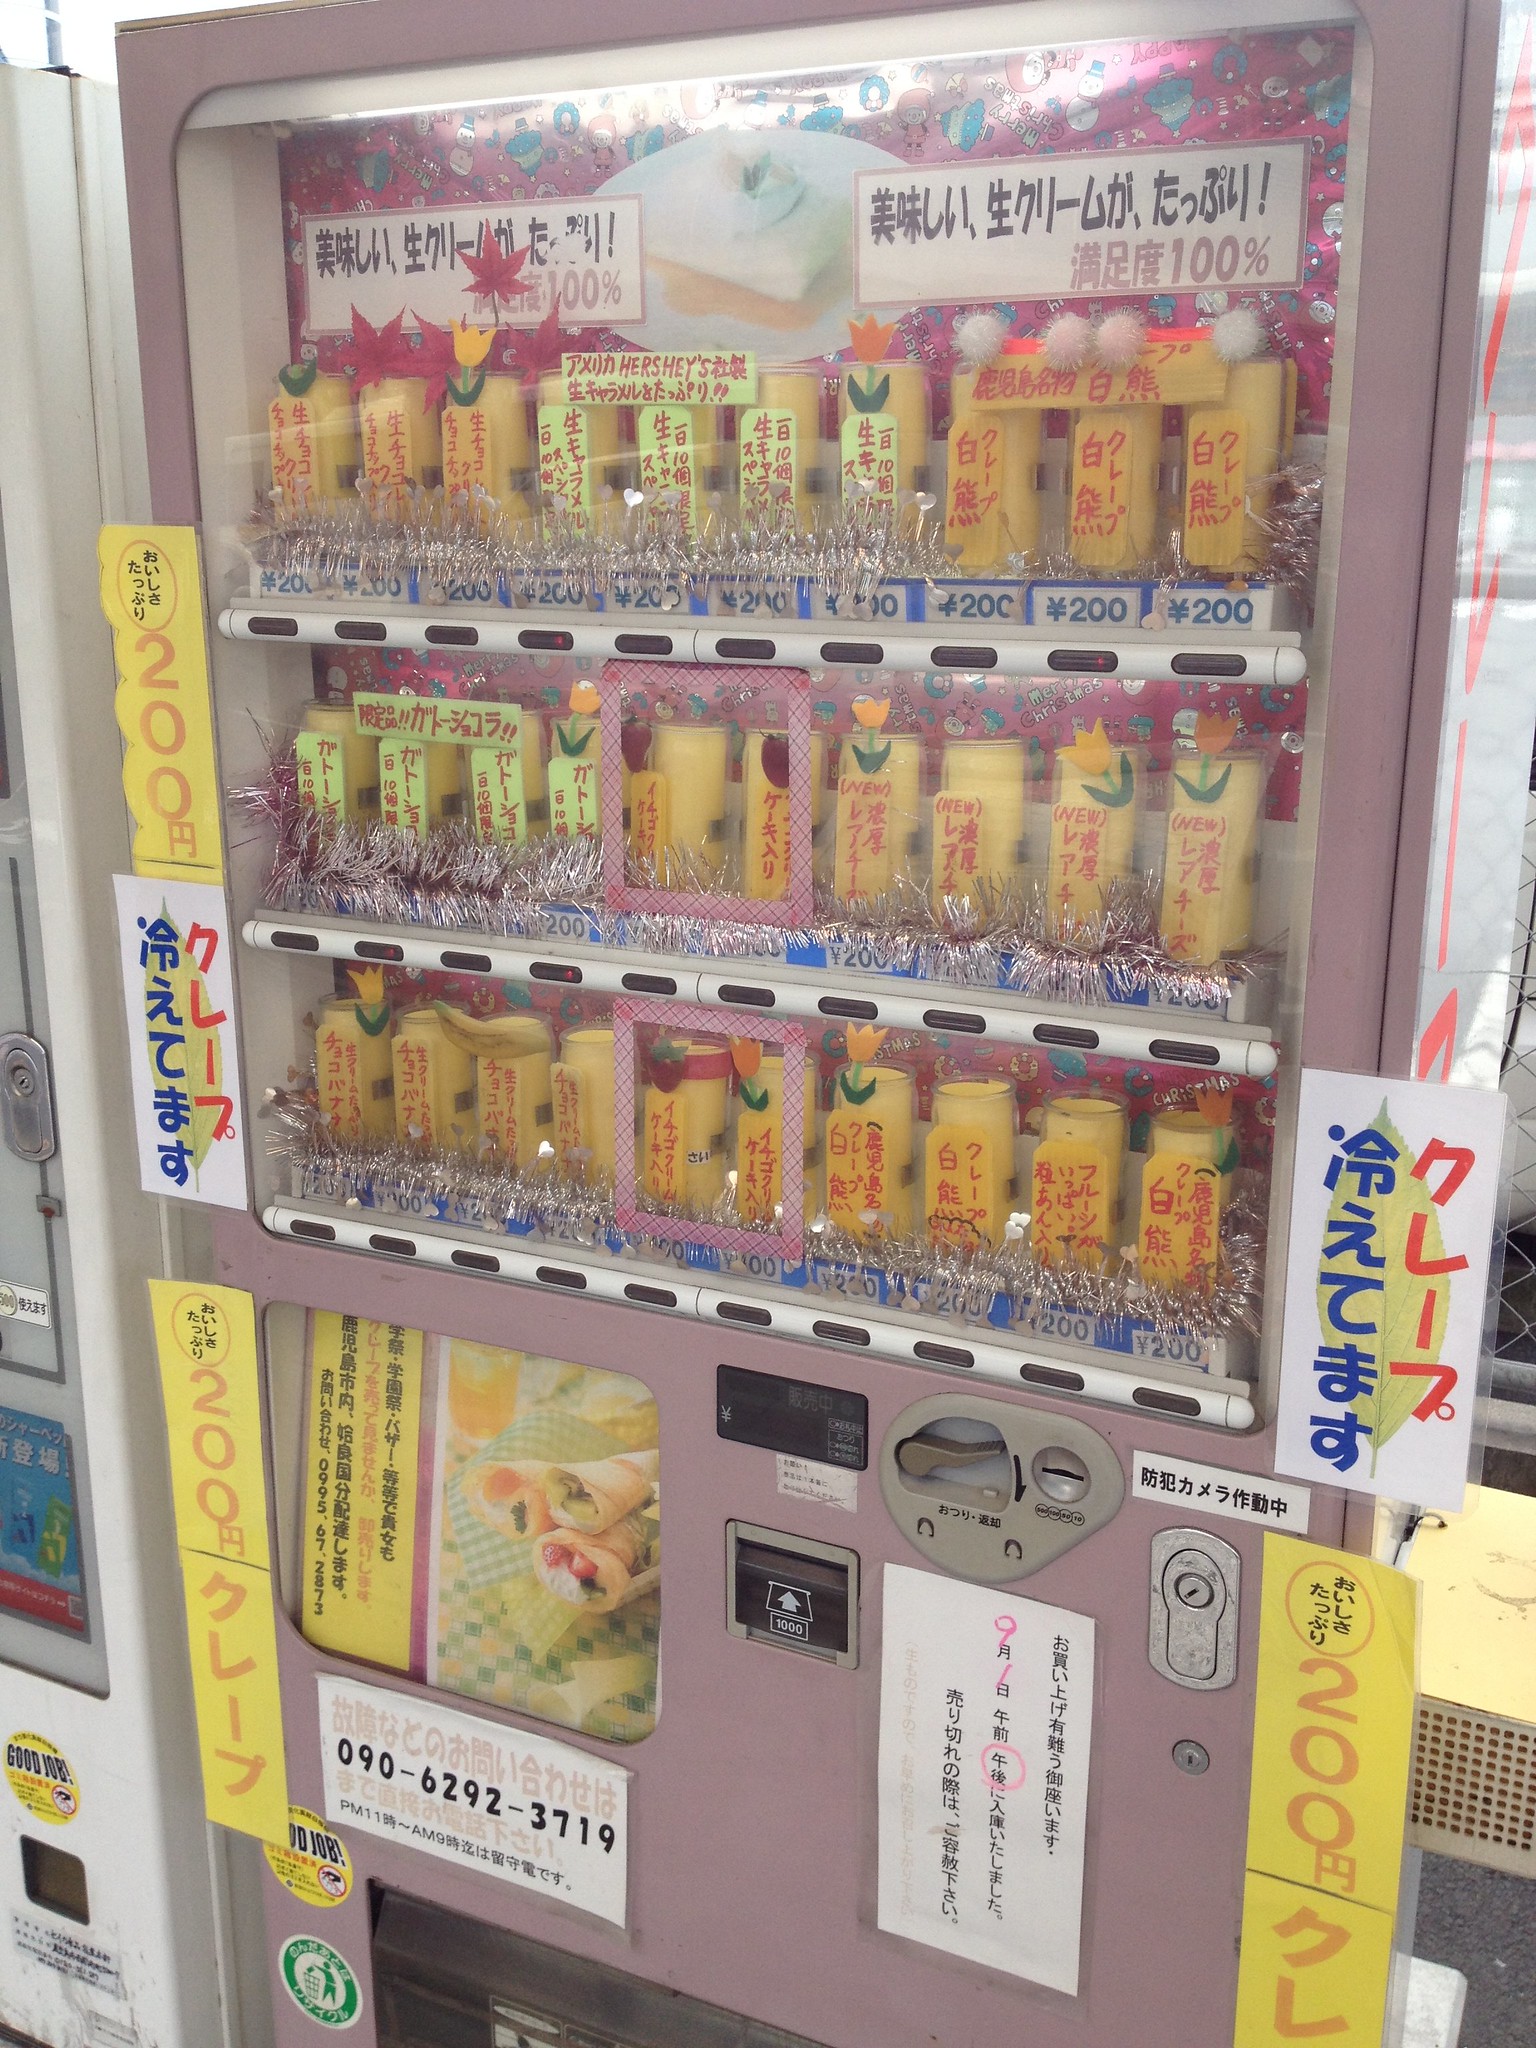 Distributore automatico di frittata giapponese